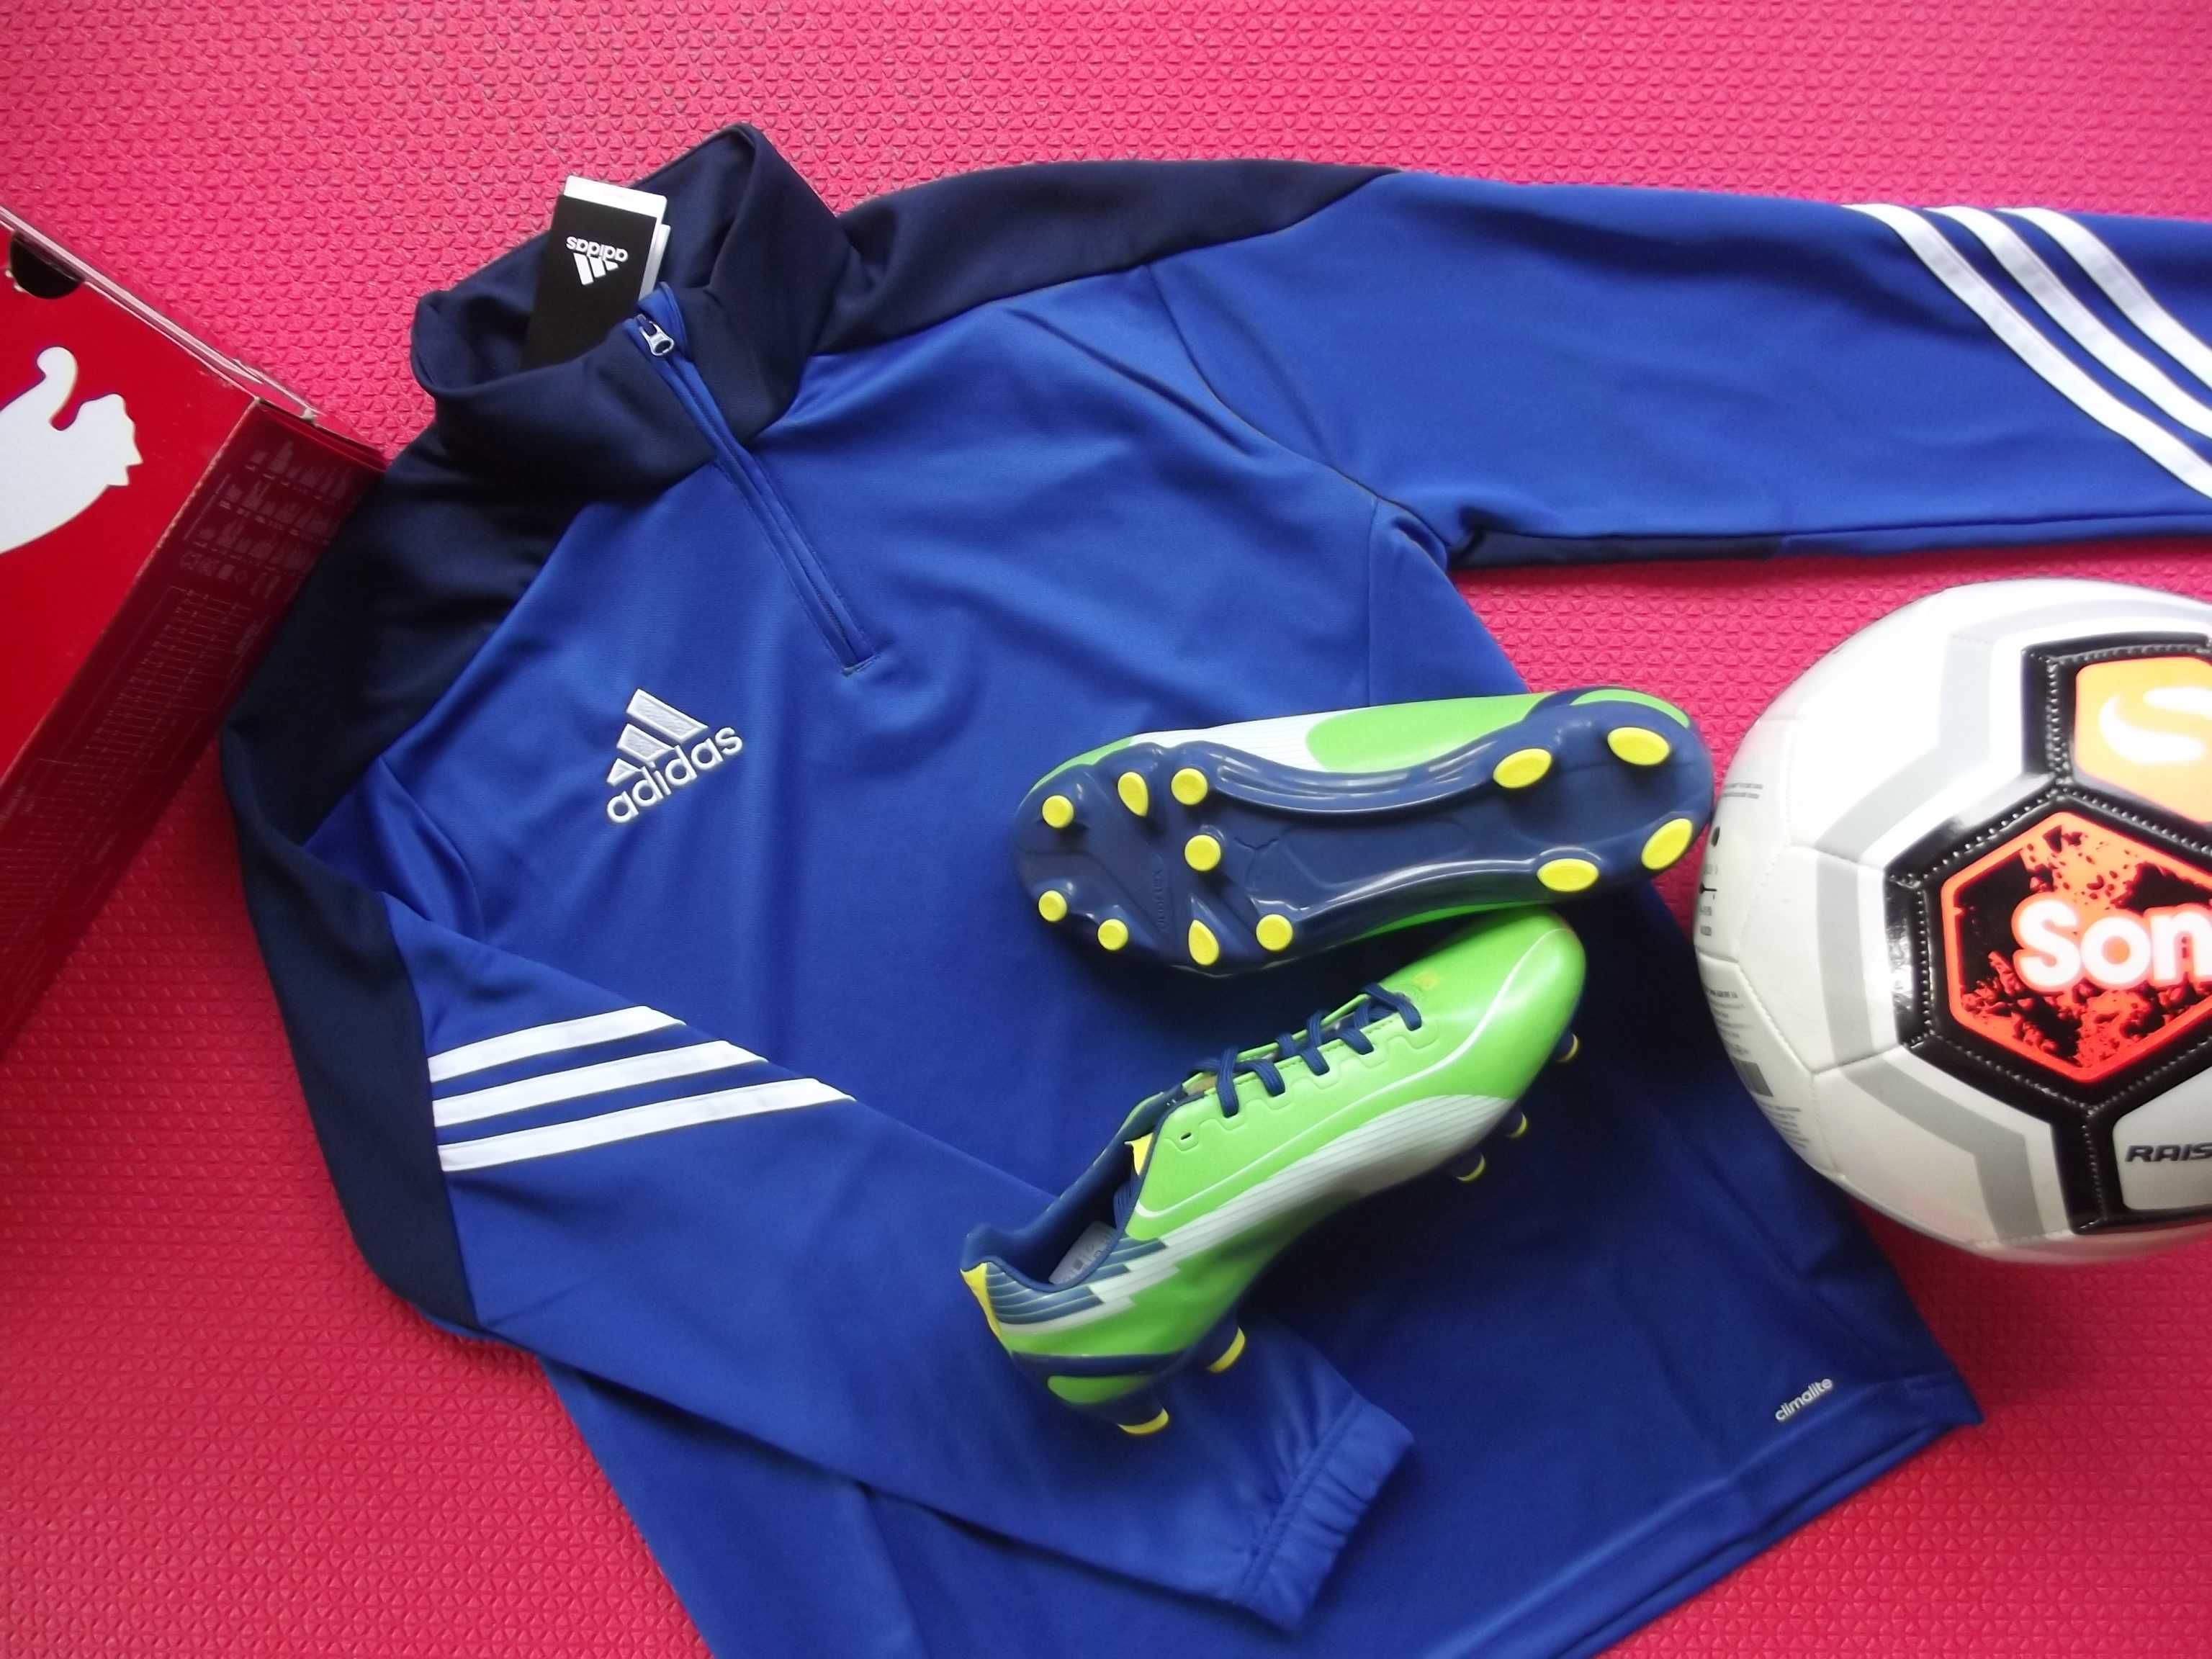 korki Puma 38 buty piłkarskie 24 cm + bluza Adidas + piłka Sondico